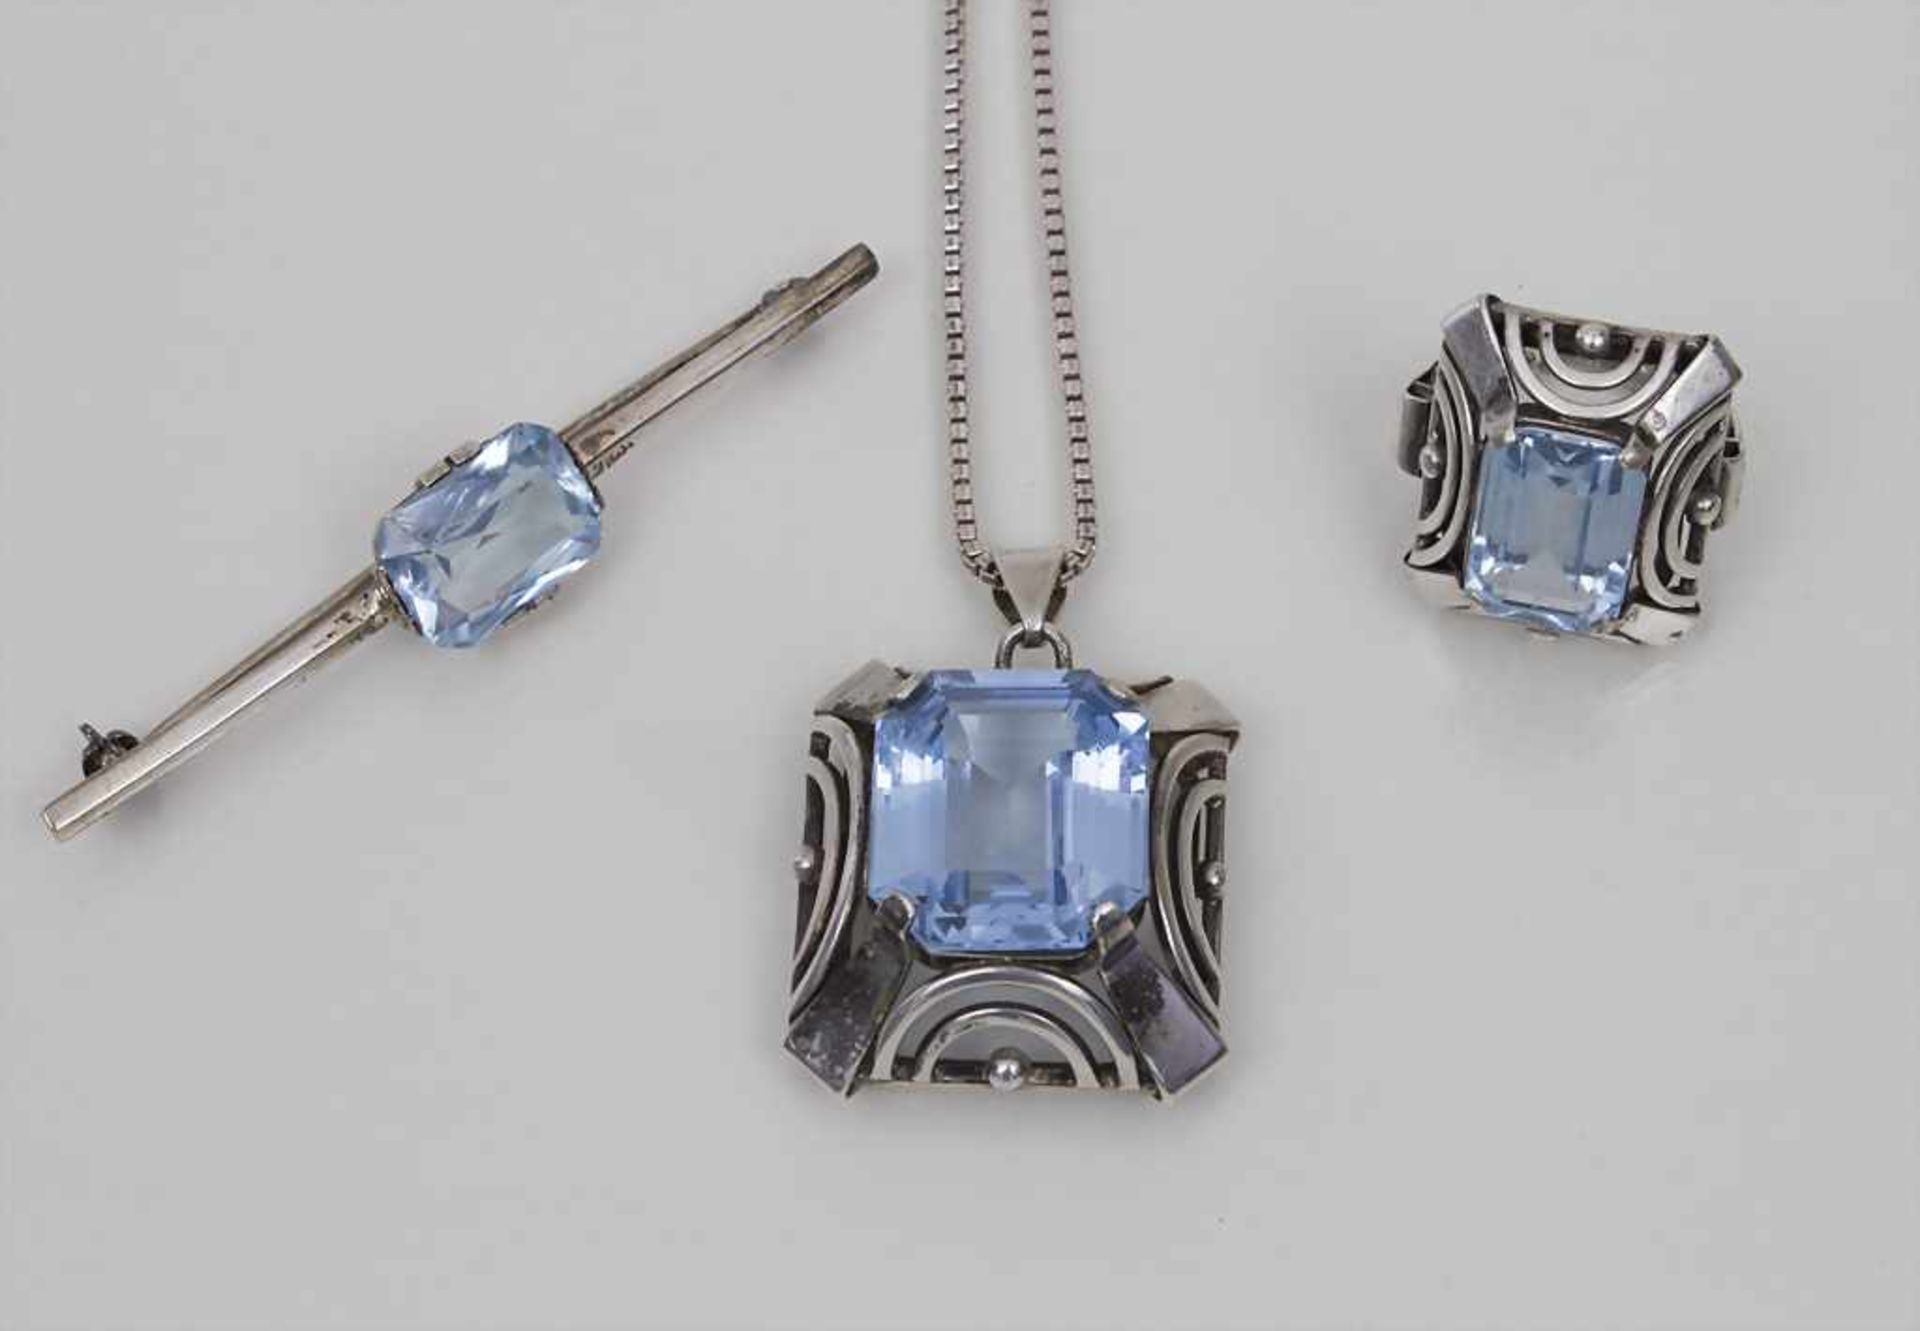 Schmuckset mit blauem Schmuckstein / A Set of Jewellery with Blue Stone bestehend aus Halskette